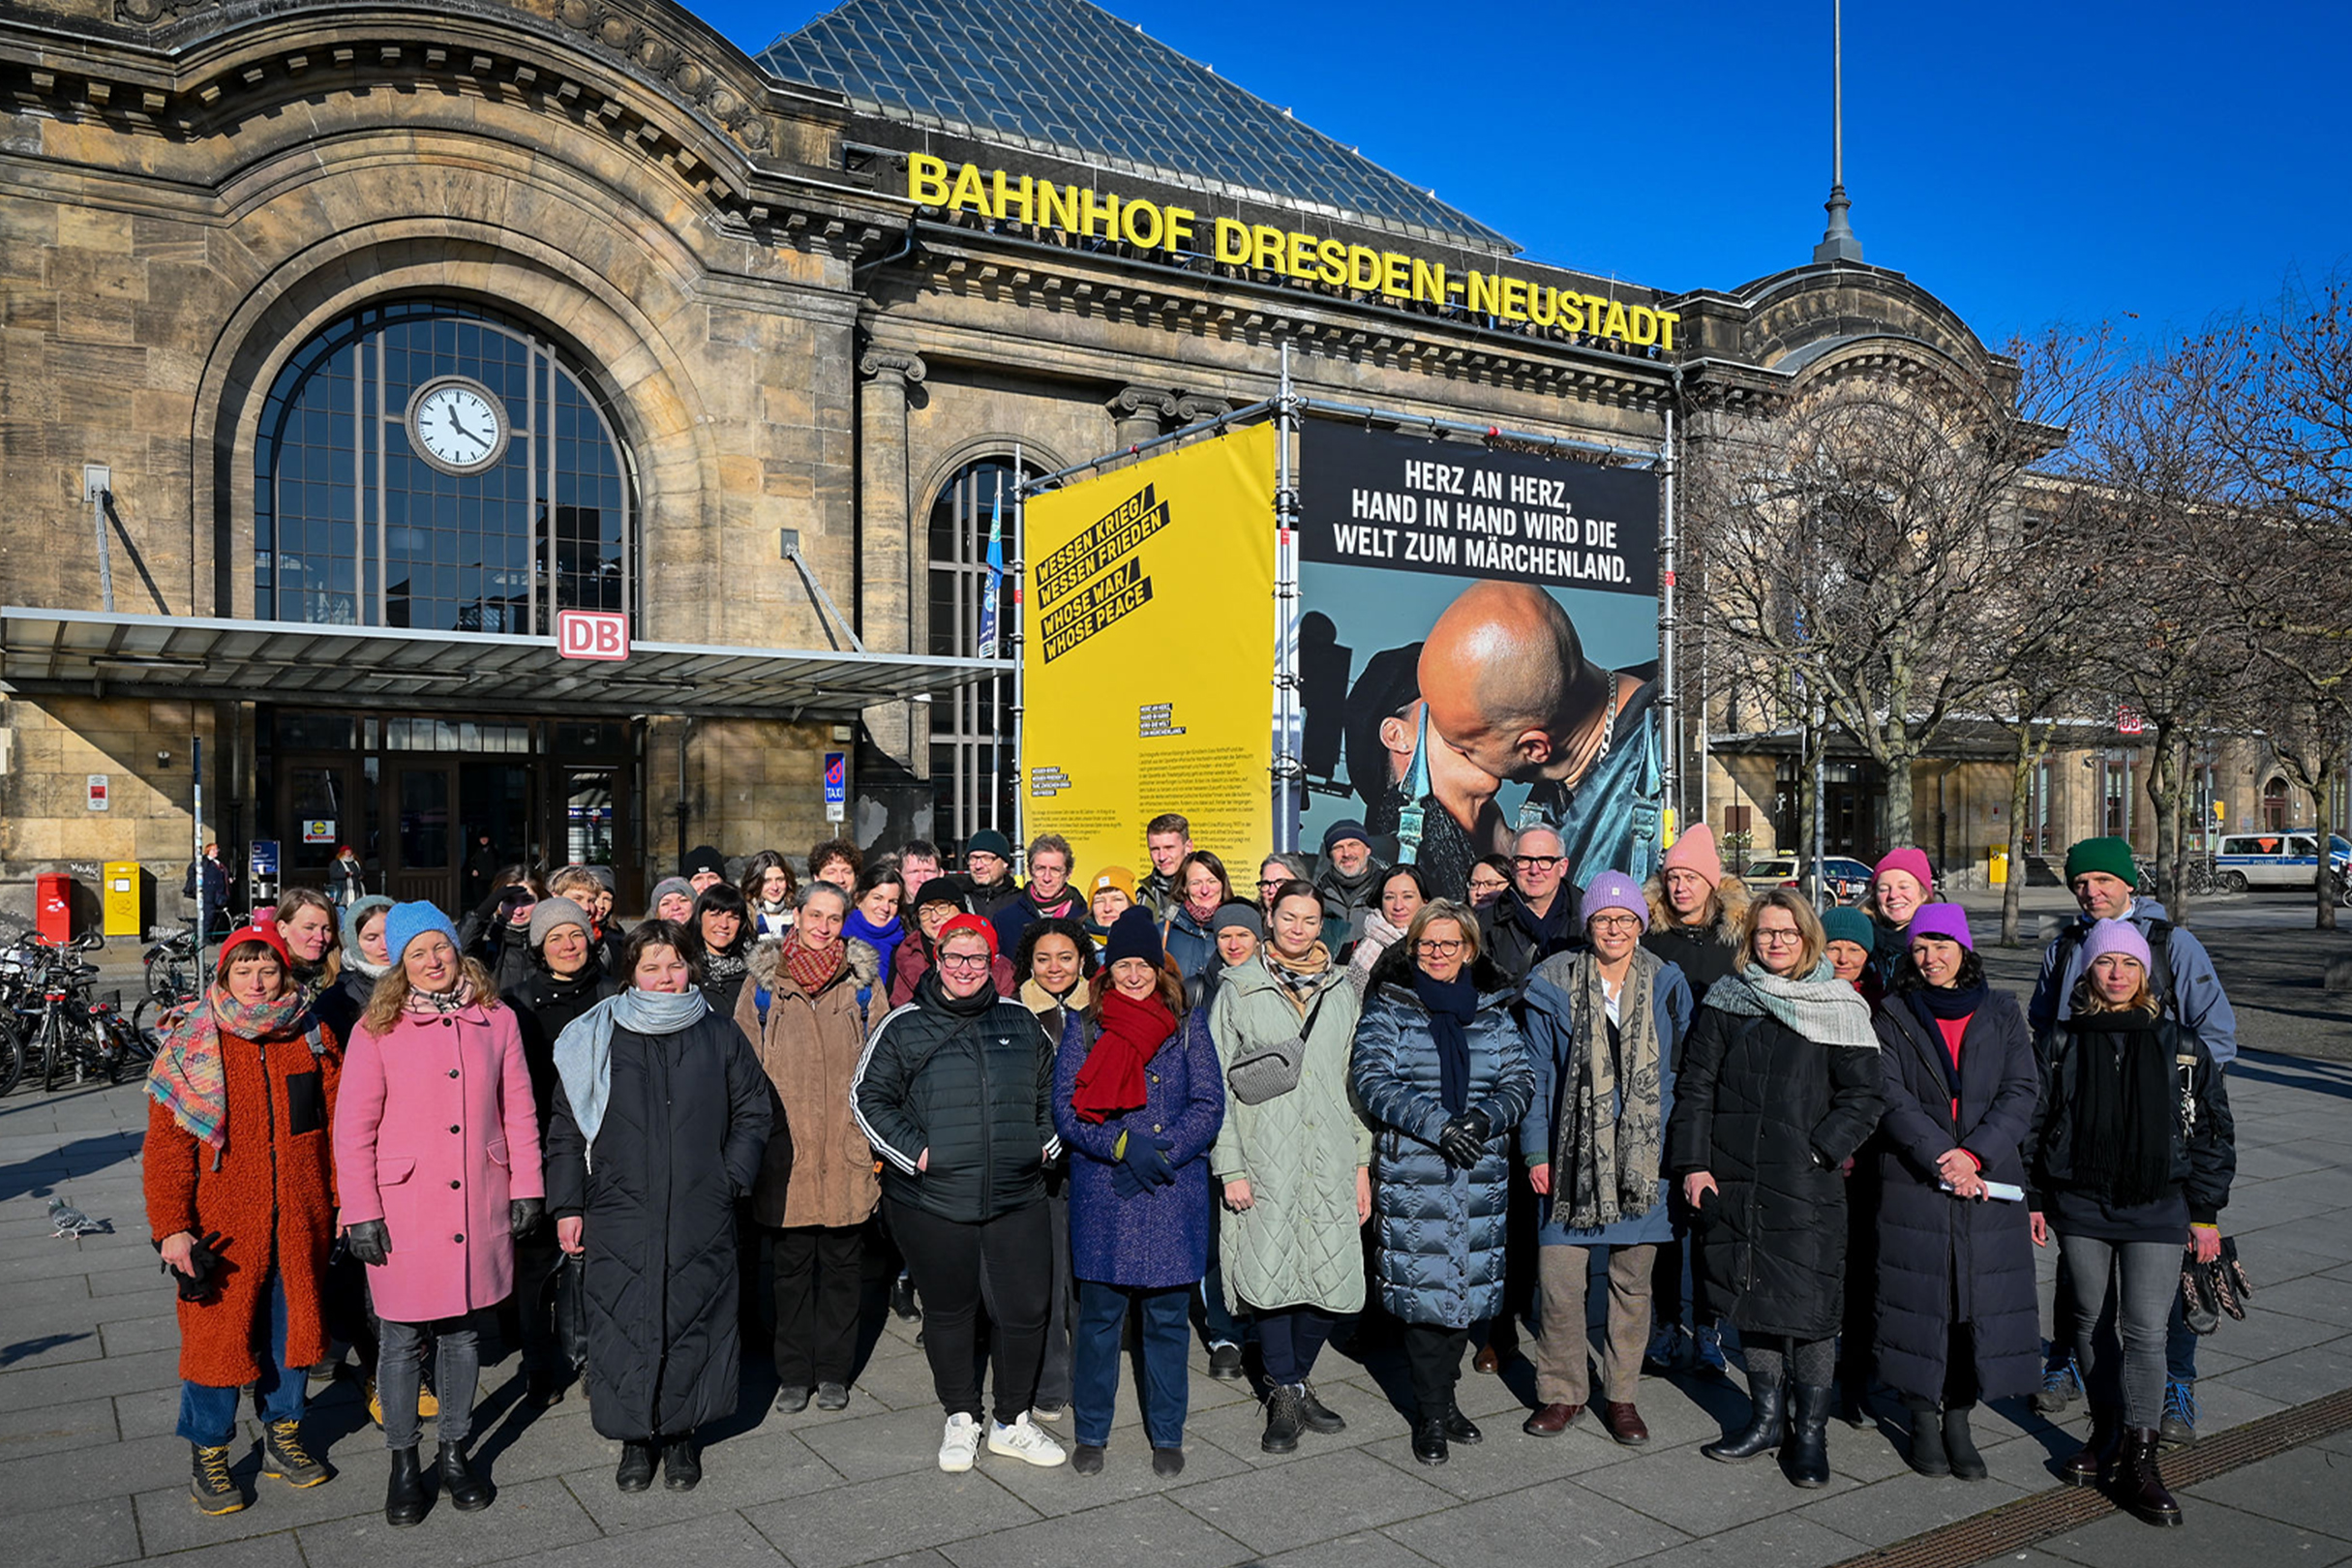 Eine große Personengruppe steht vor dem Bahnhofsgebäude Dresden-Neustadt. Auf dem Platz ist auch eine Plakataktion zum Thema "Weltoffenes Dresden" zu sehen.